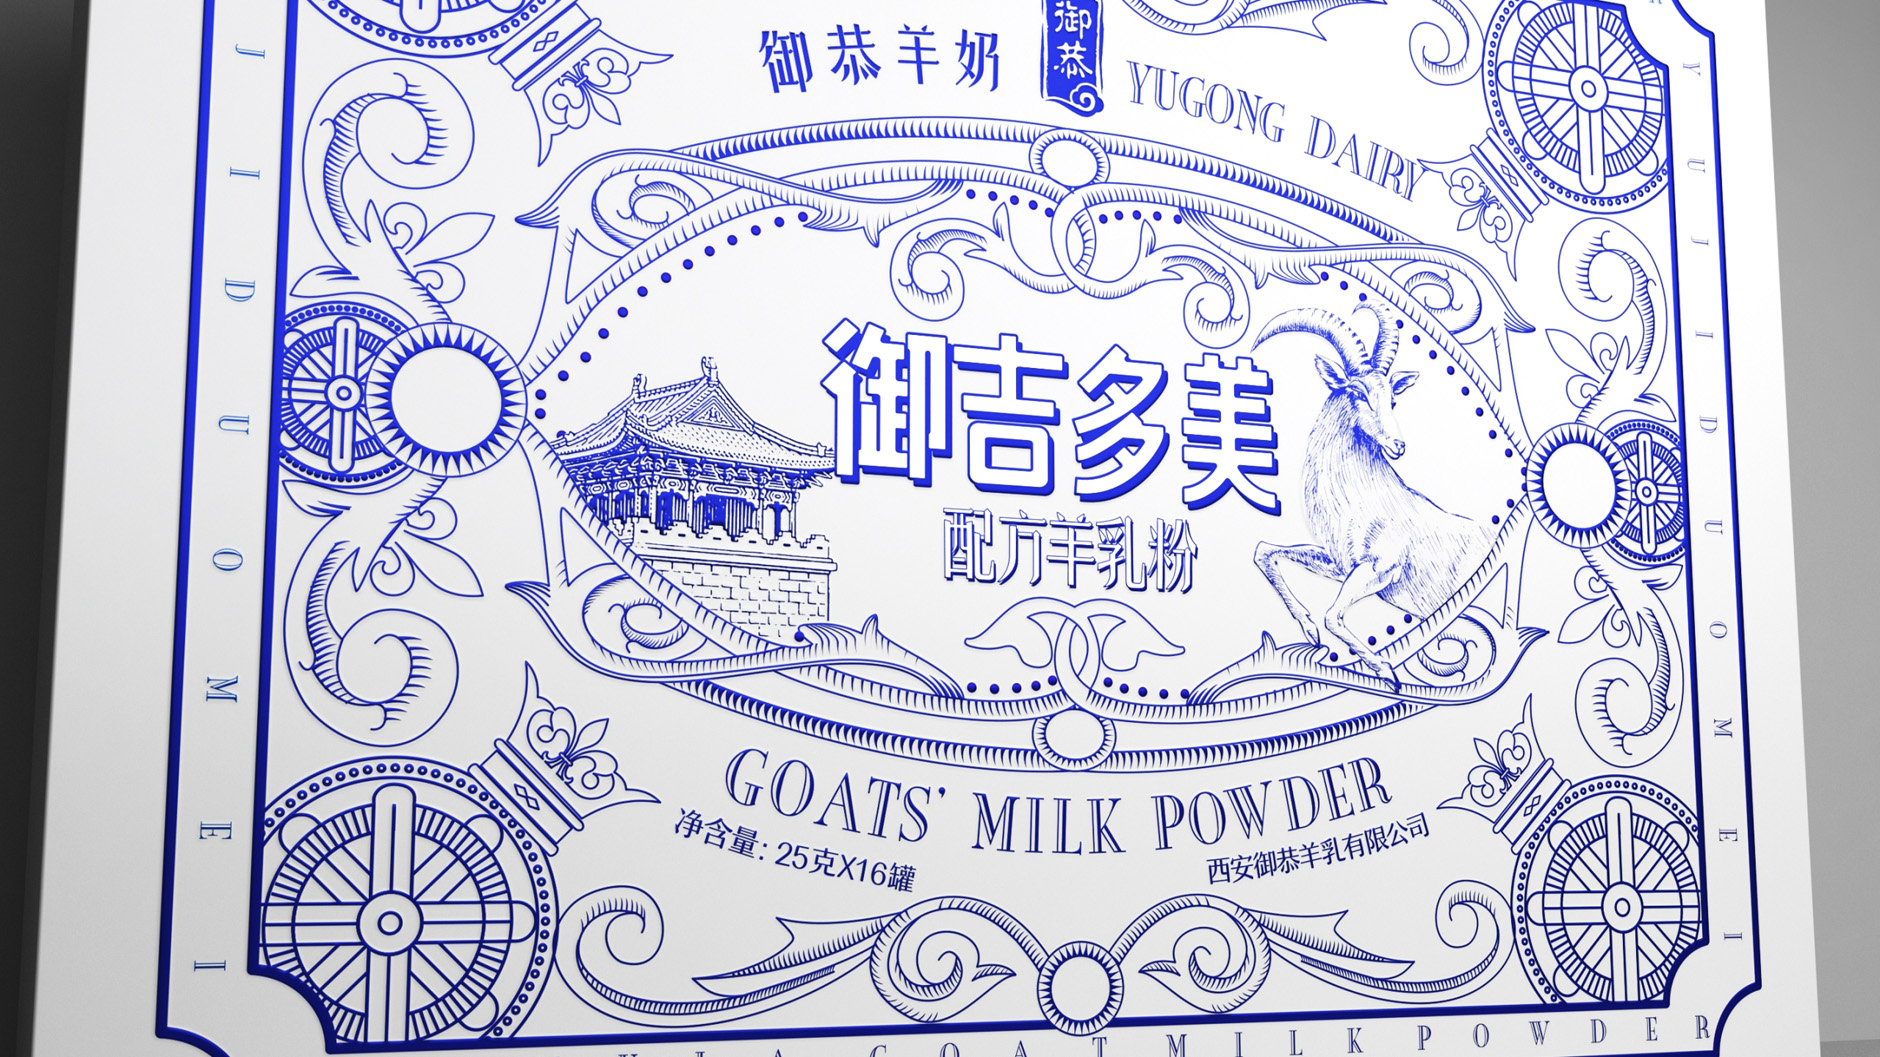 羊奶粉包装设计 纯羊奶包装设计 羊乳粉礼盒包装设计